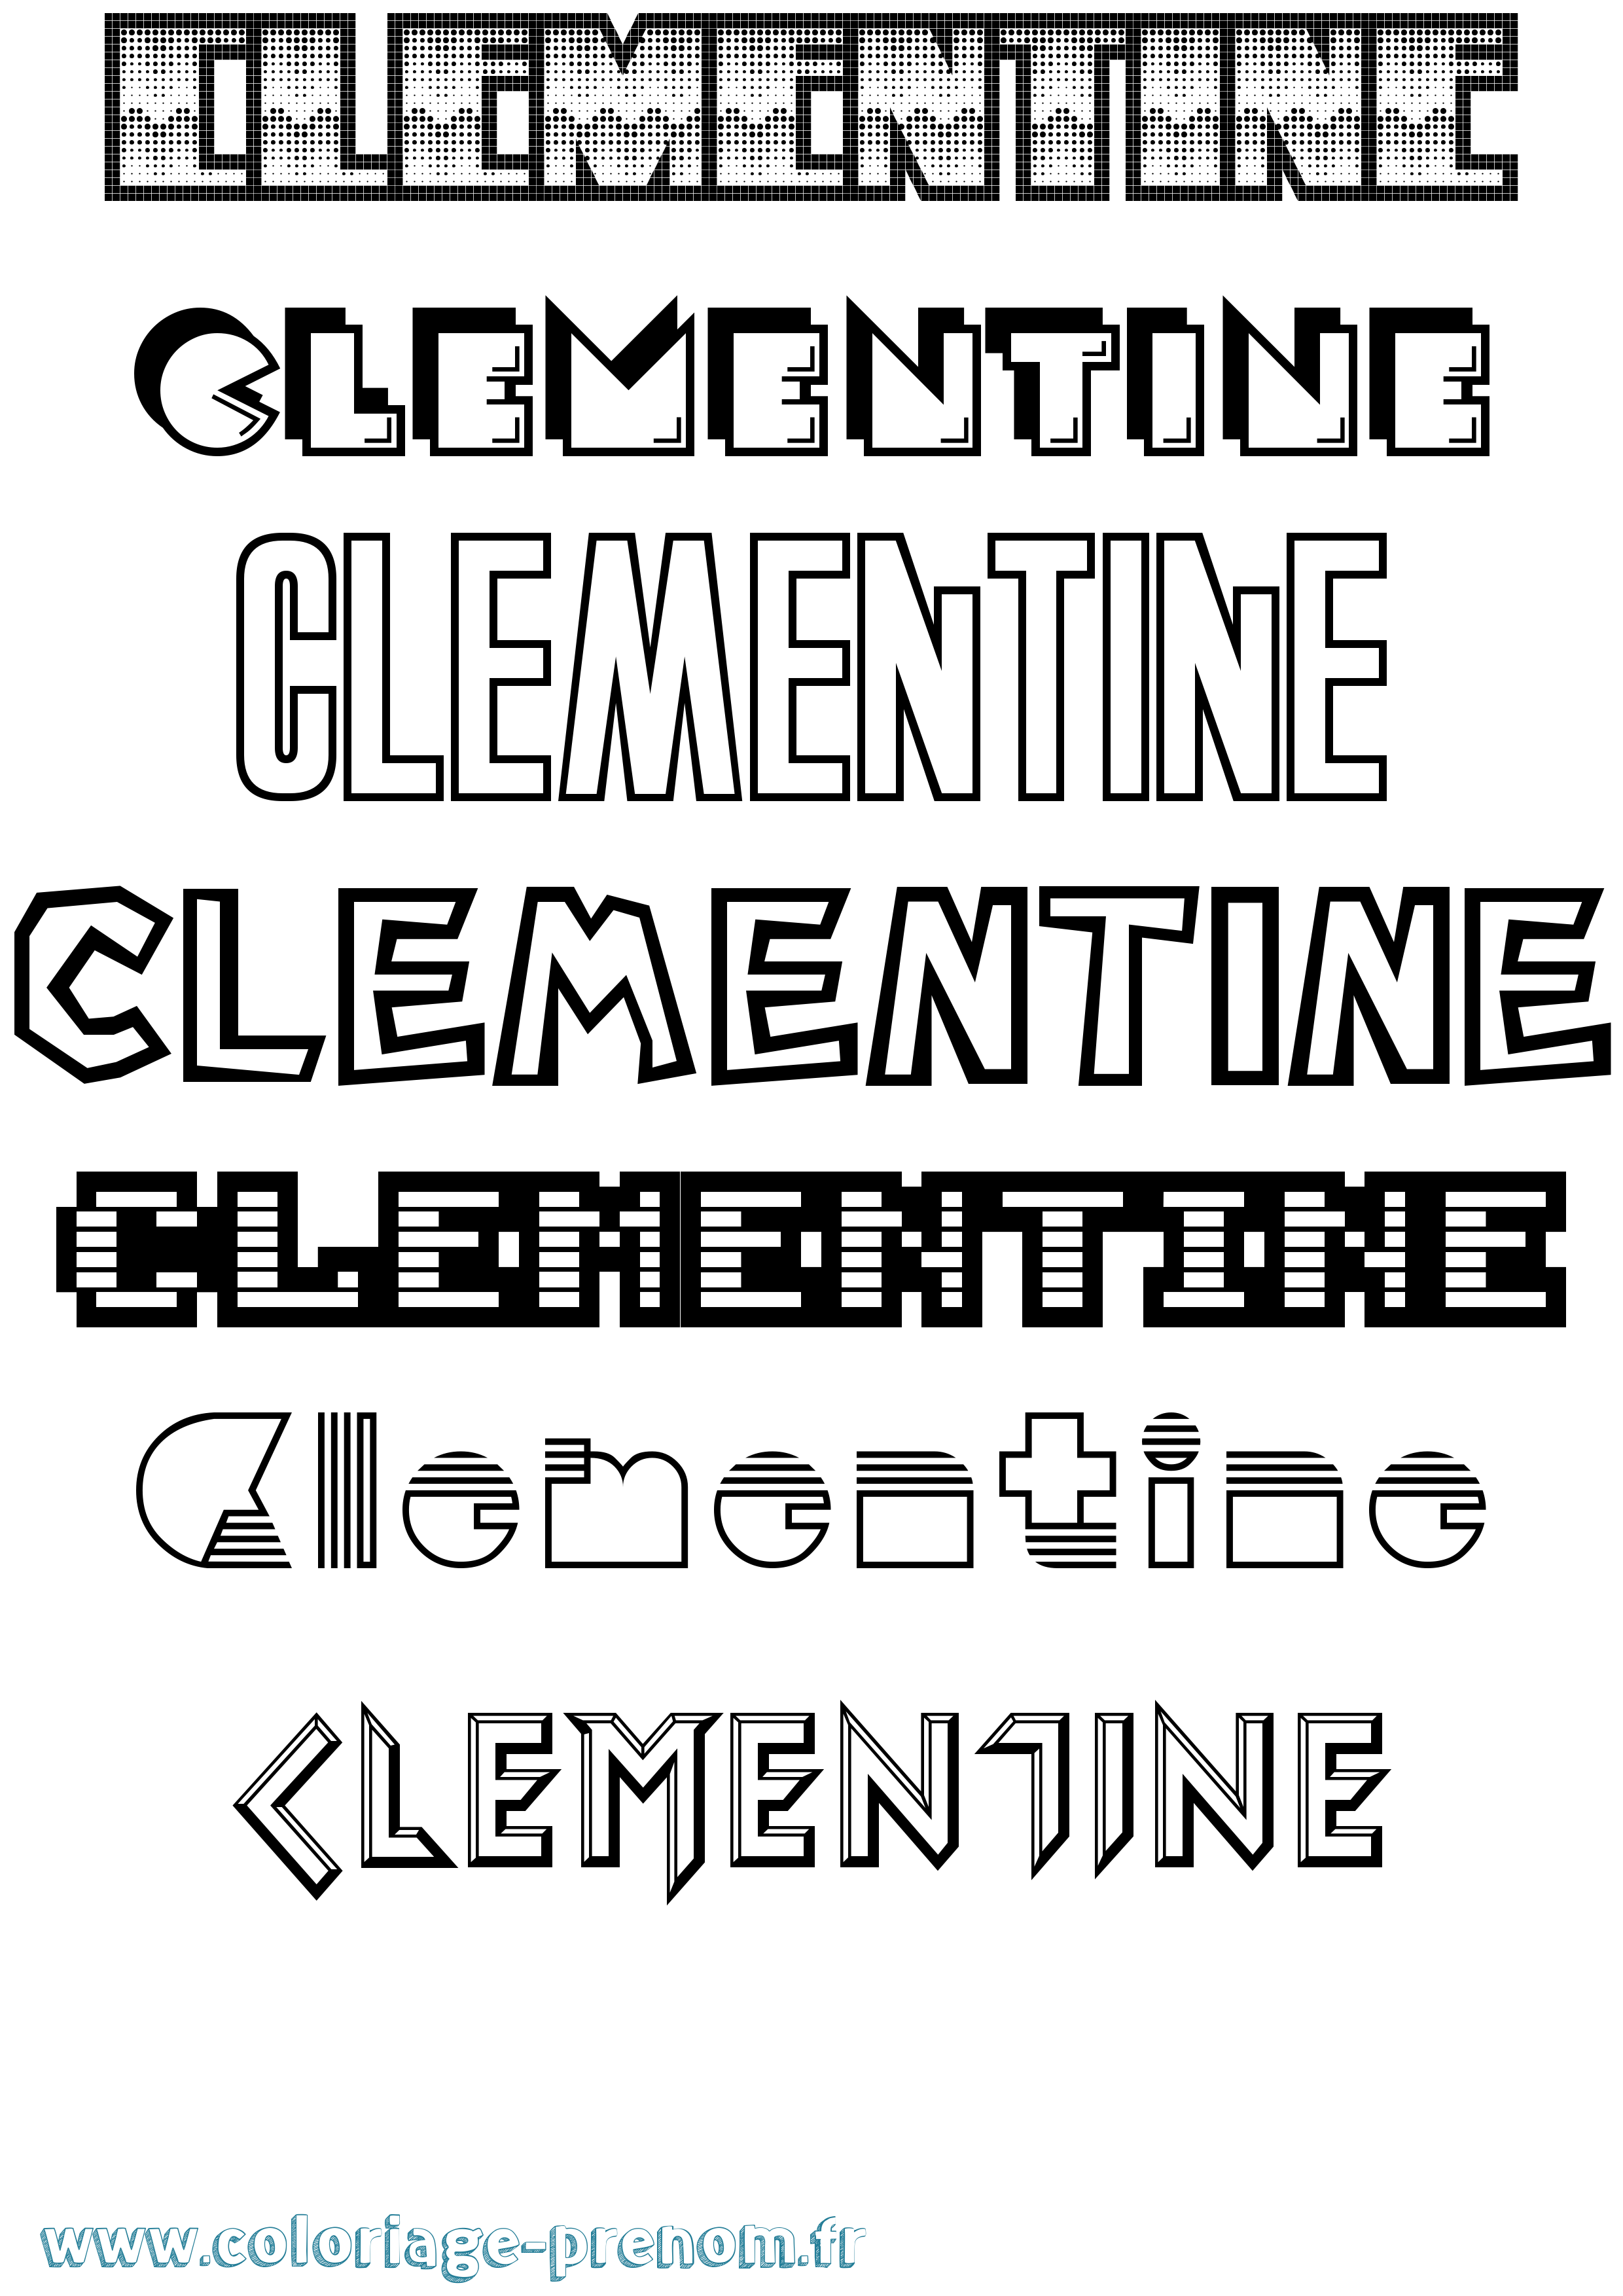 Coloriage prénom Clementine Jeux Vidéos